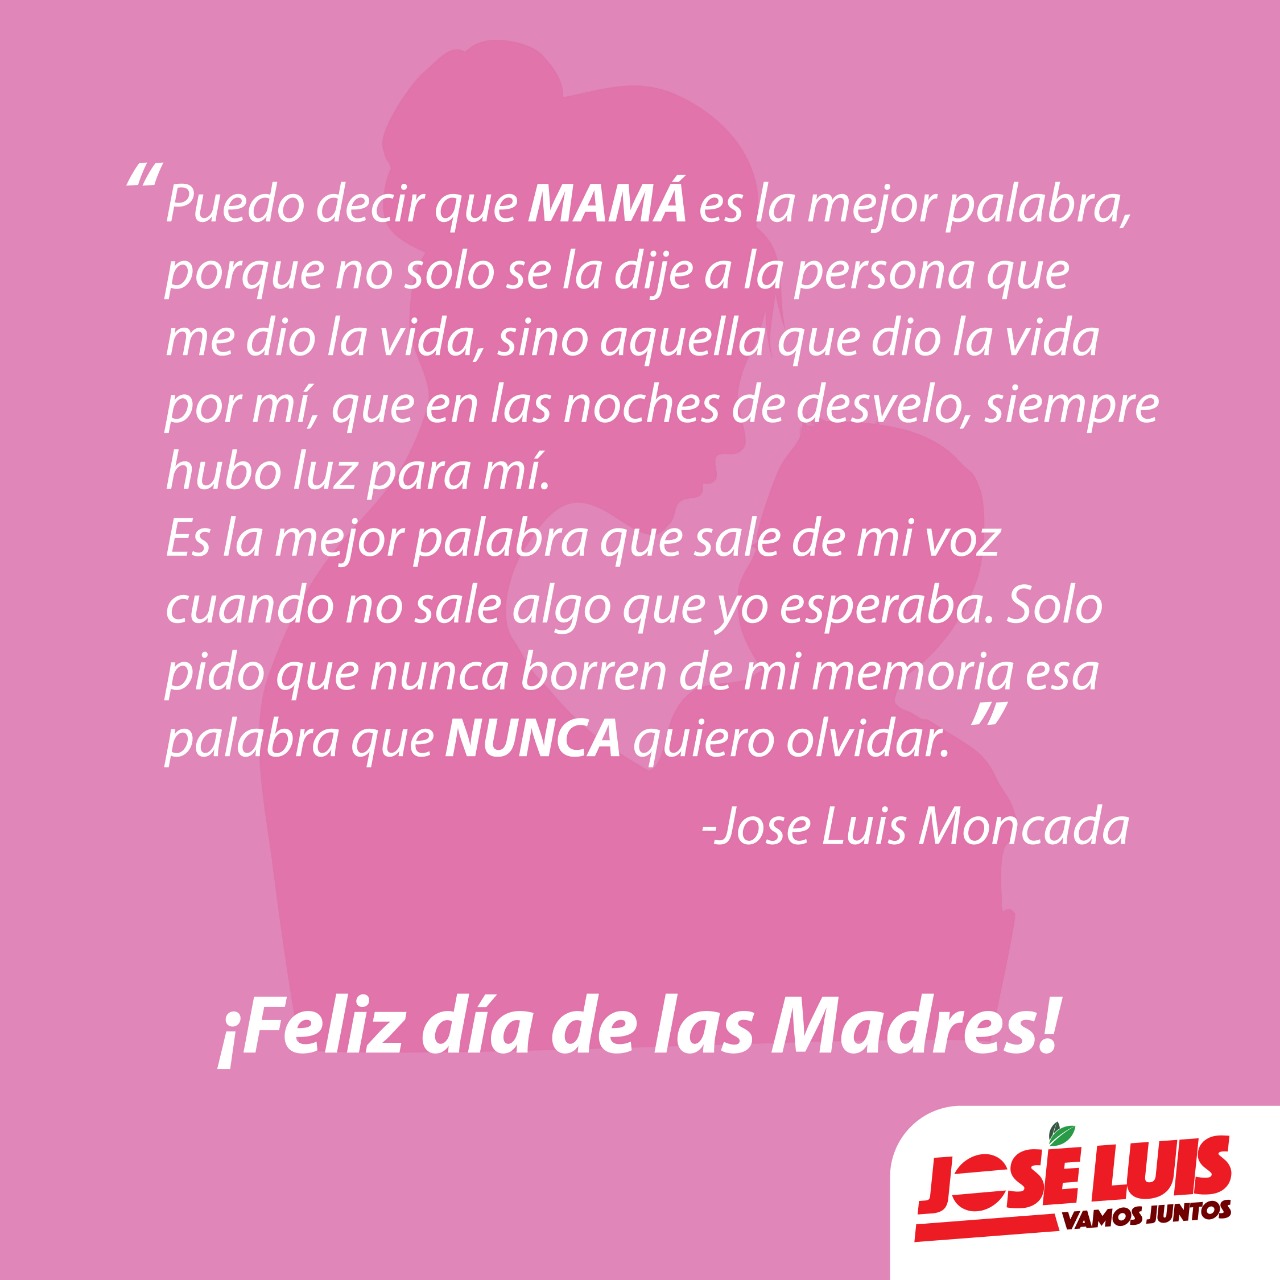 Jose Moncada R on "Feliz Dia a todas las Madres, en especial a la mia en el cielo..Gracias por la madre y amiga que fuistes. https://t.co/oWiCJ7v8r5" / Twitter